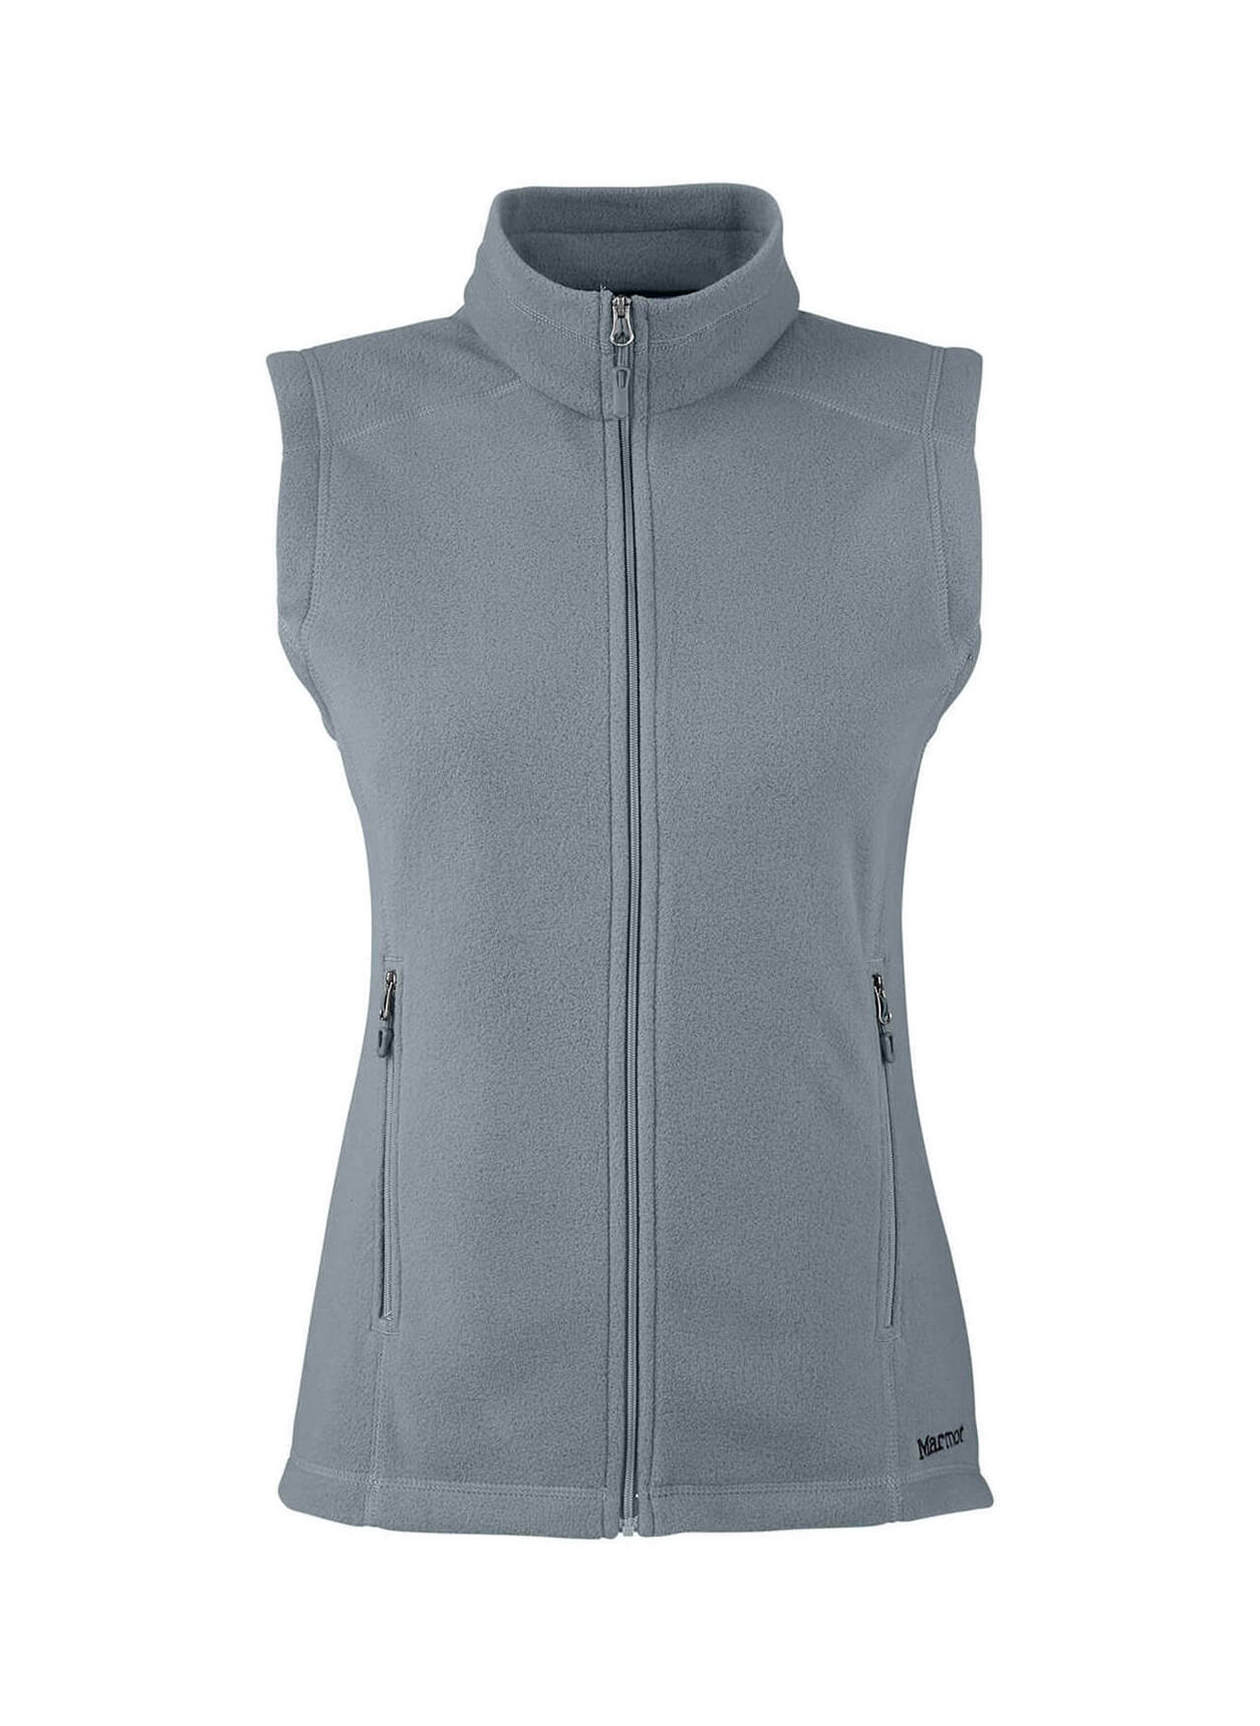 Marmot Women's Steel Onyx Rocklin Fleece Vest